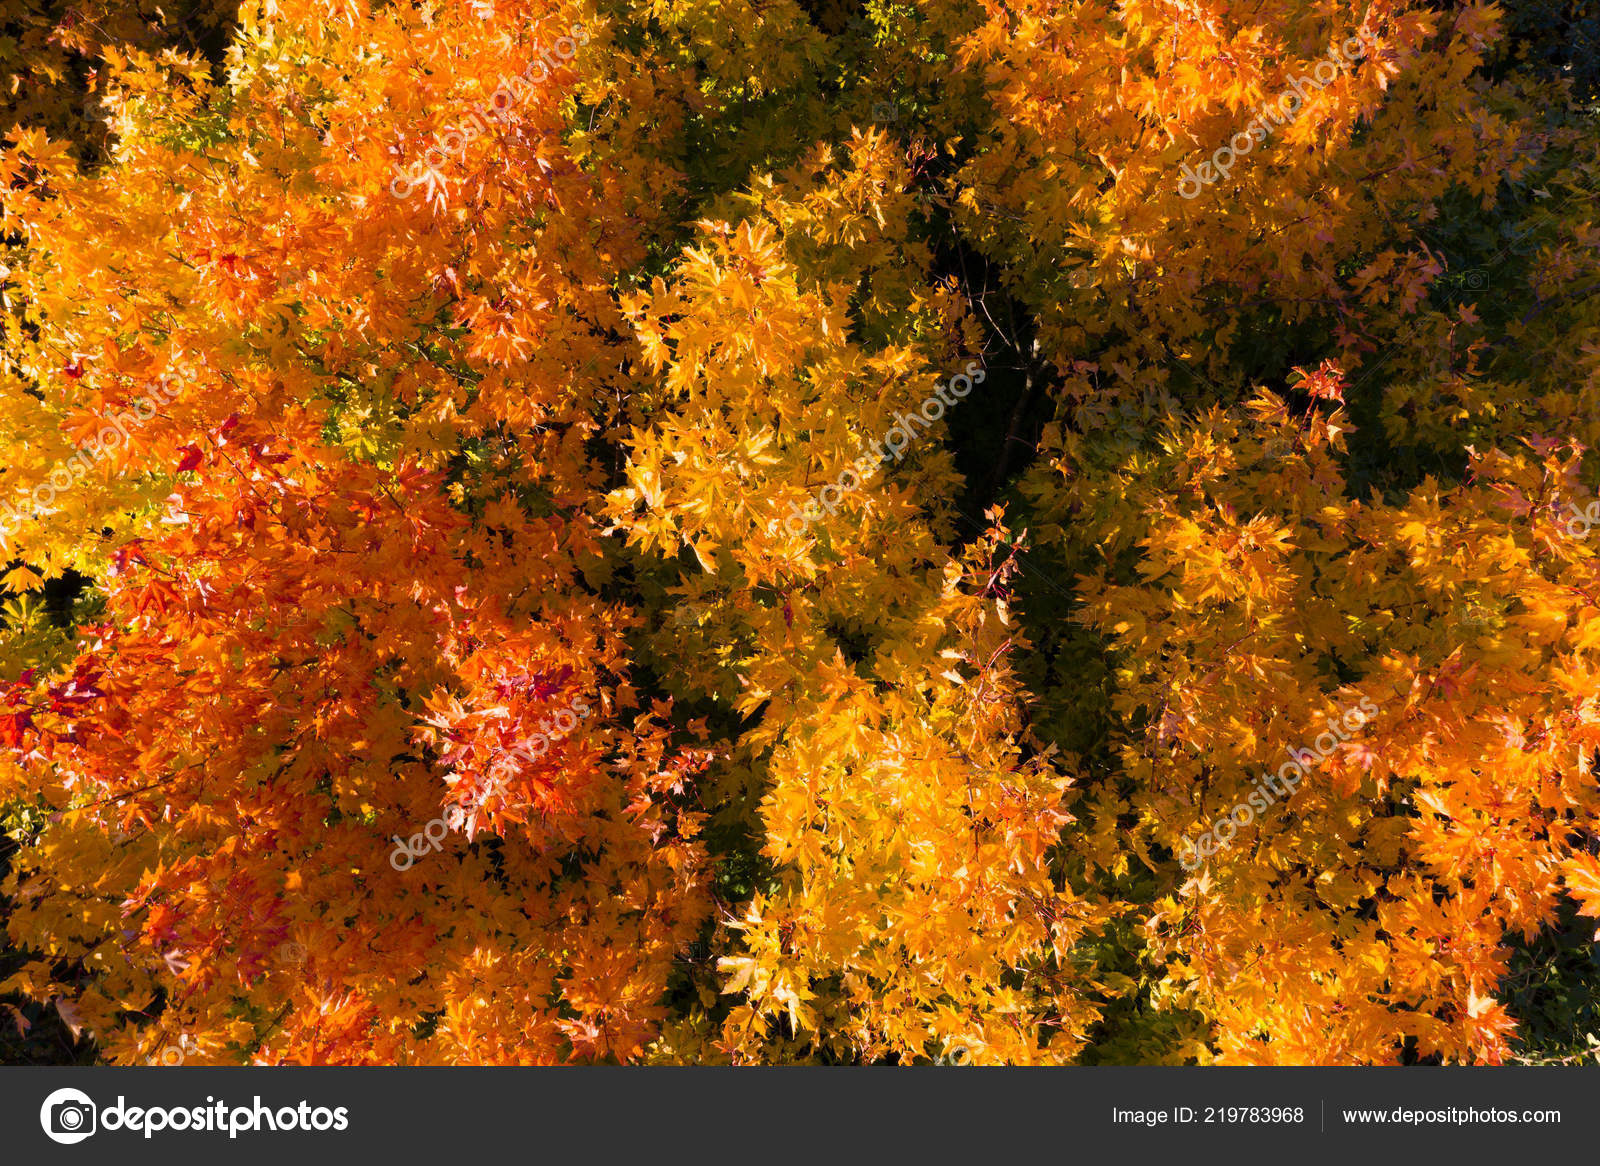 Autumn - HD Wallpaper 